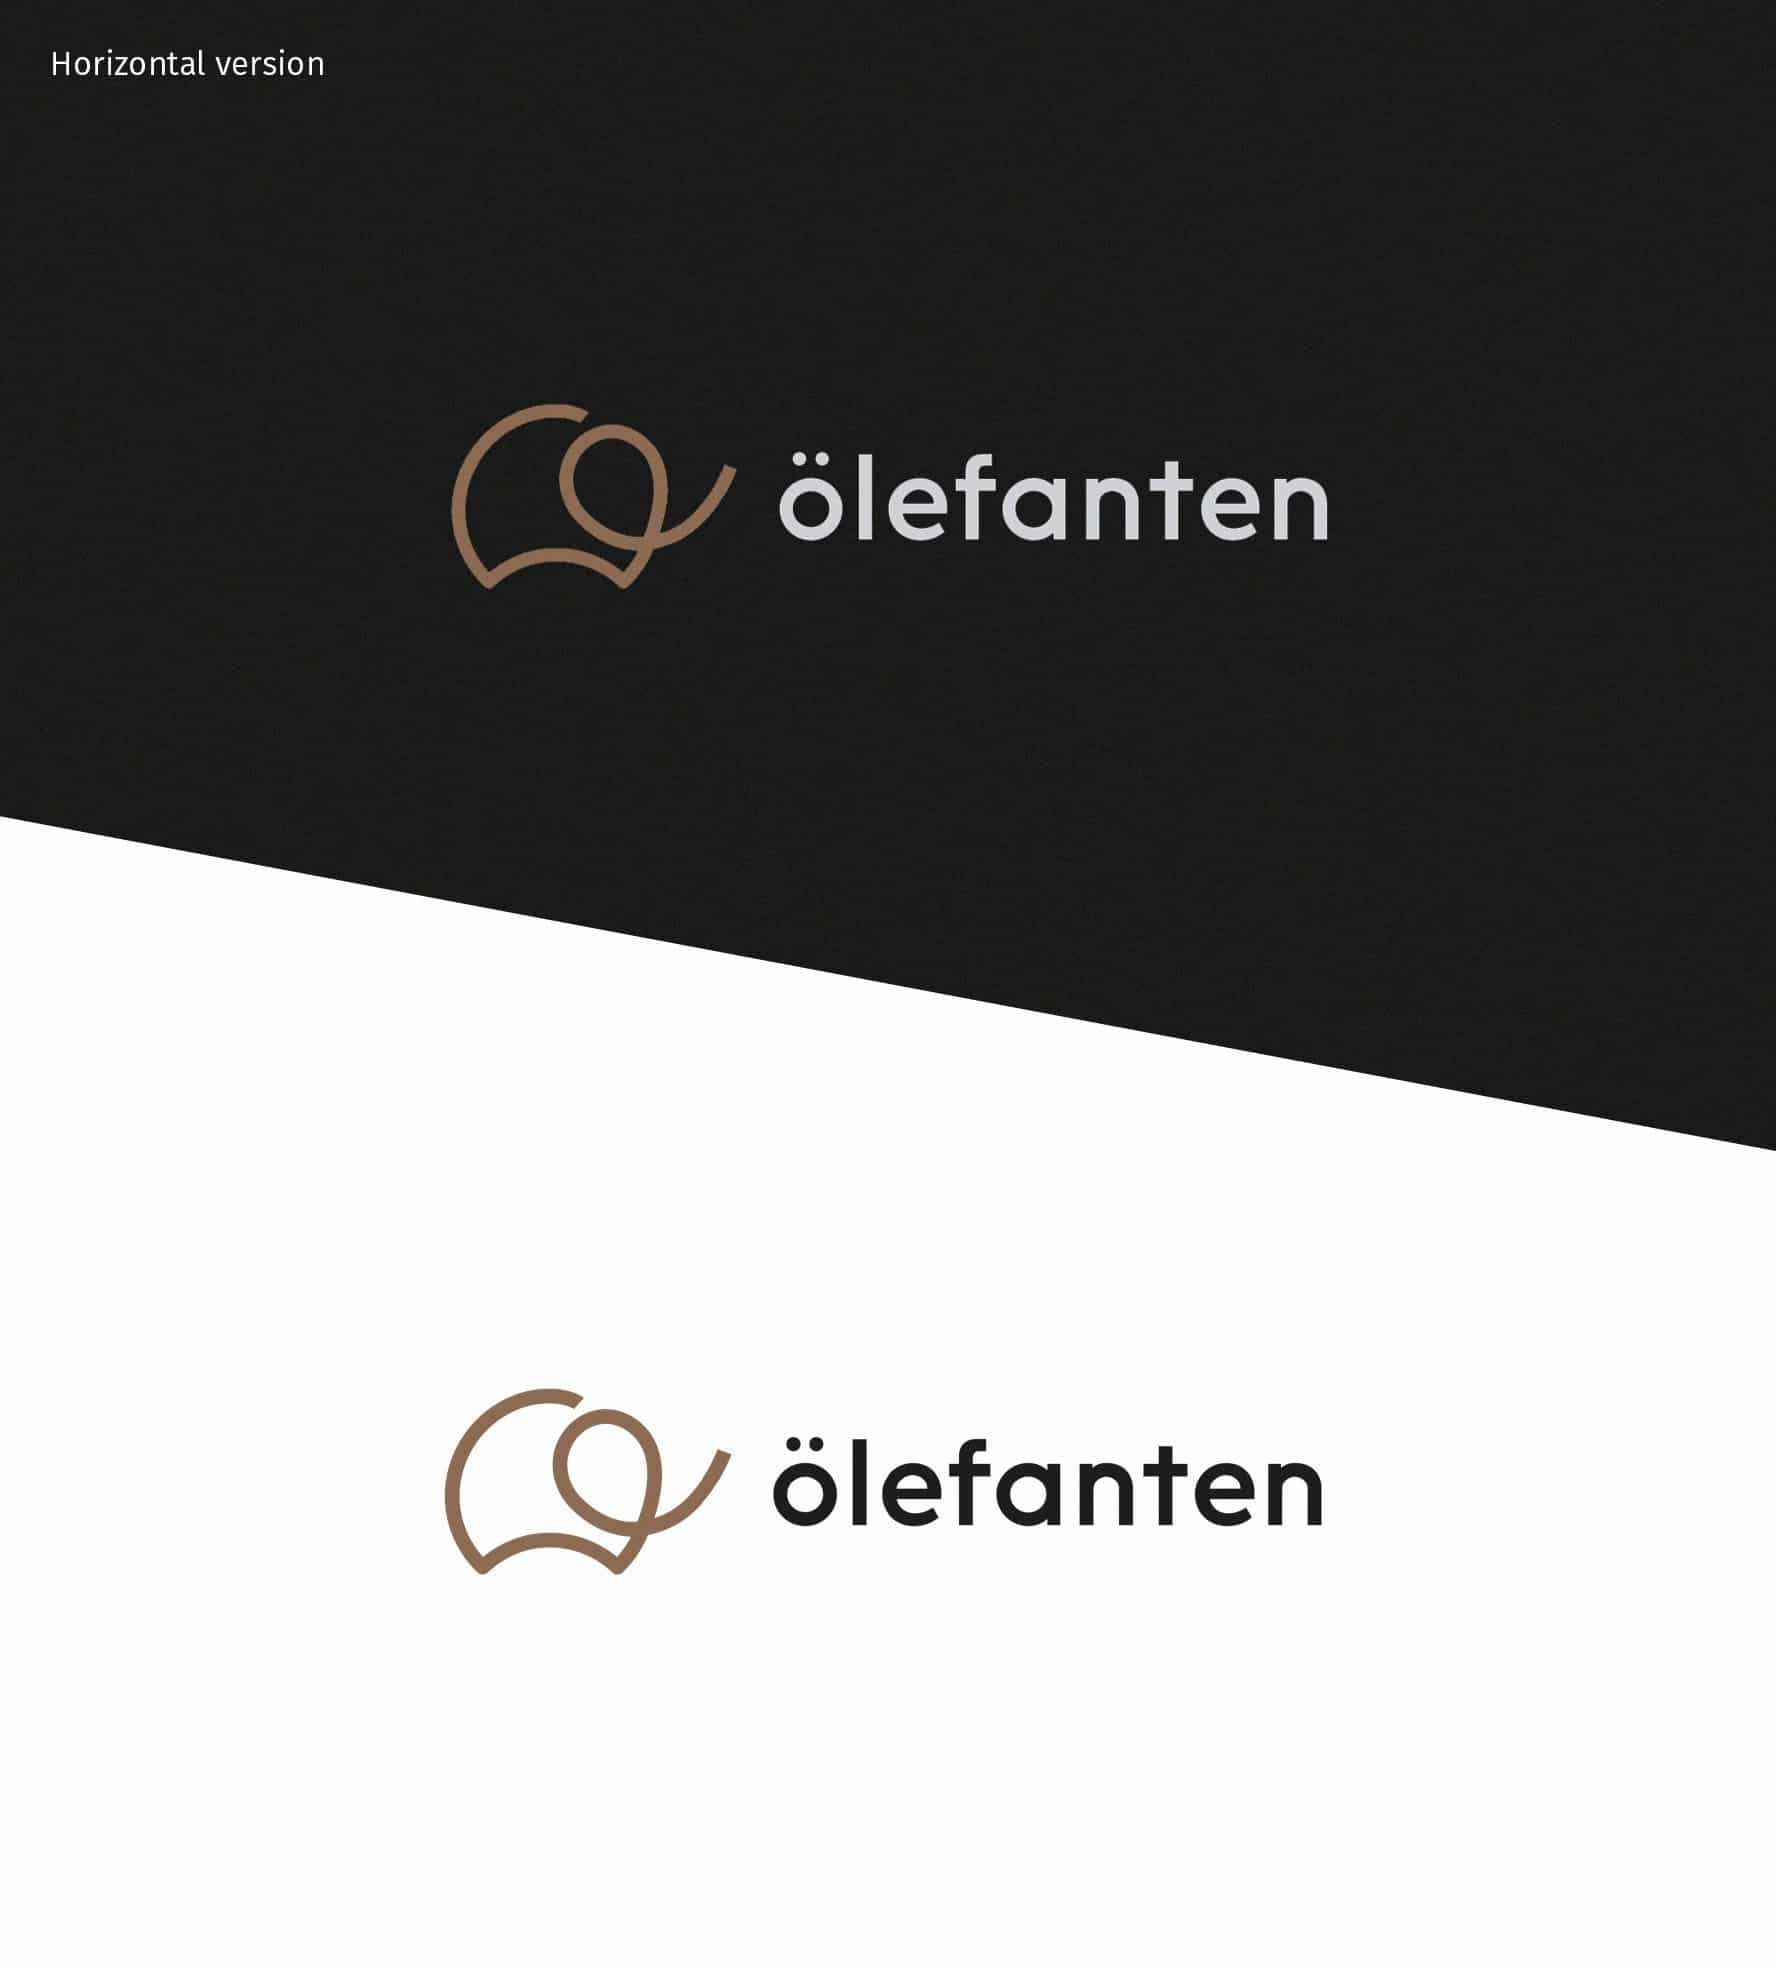 branding-rebranding-redesign-porjektowanie-opakowan-lodz-studio-graficzne-logo-packaging-design-identyfikacja-wizualna